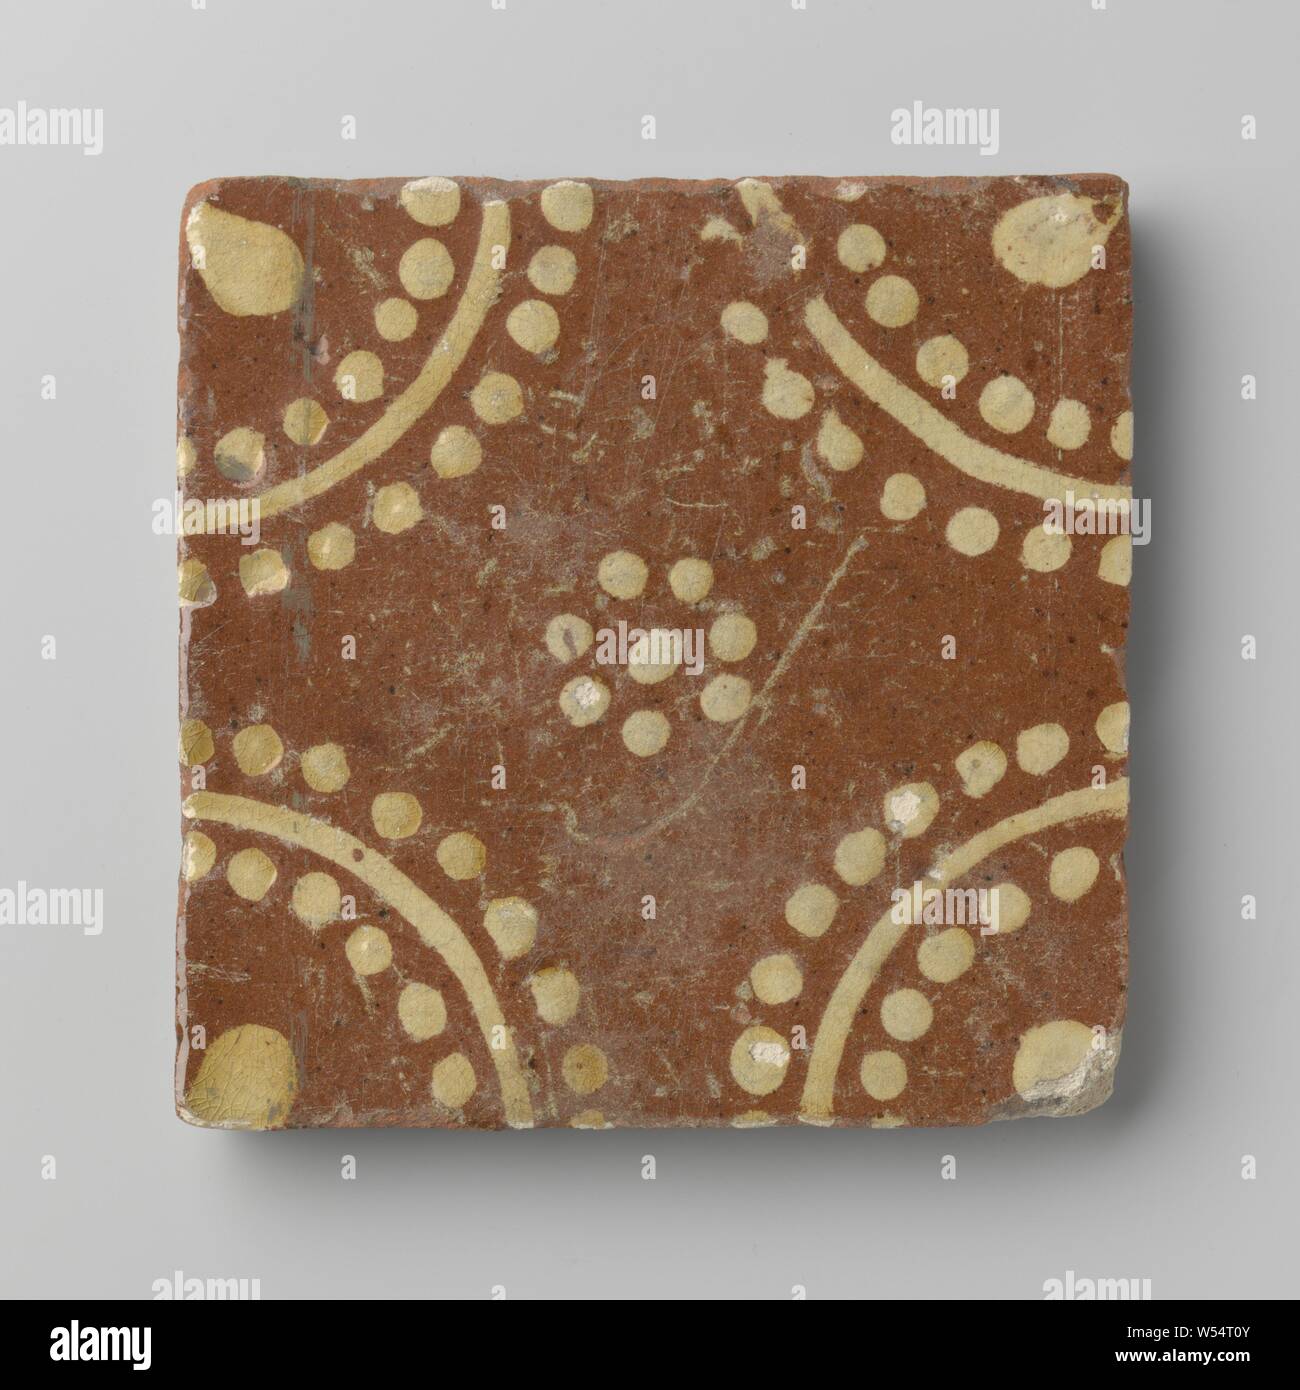 Baldosa, con una roseta de mosaico compuesto de puntos y en las esquinas, cuartos de círculo, anónimos, Bélgica, 1700 - 1850, gres, vidriado de plomo, h 11,5 cm × w t × 11,5 cm 1,5 cm. Foto de stock